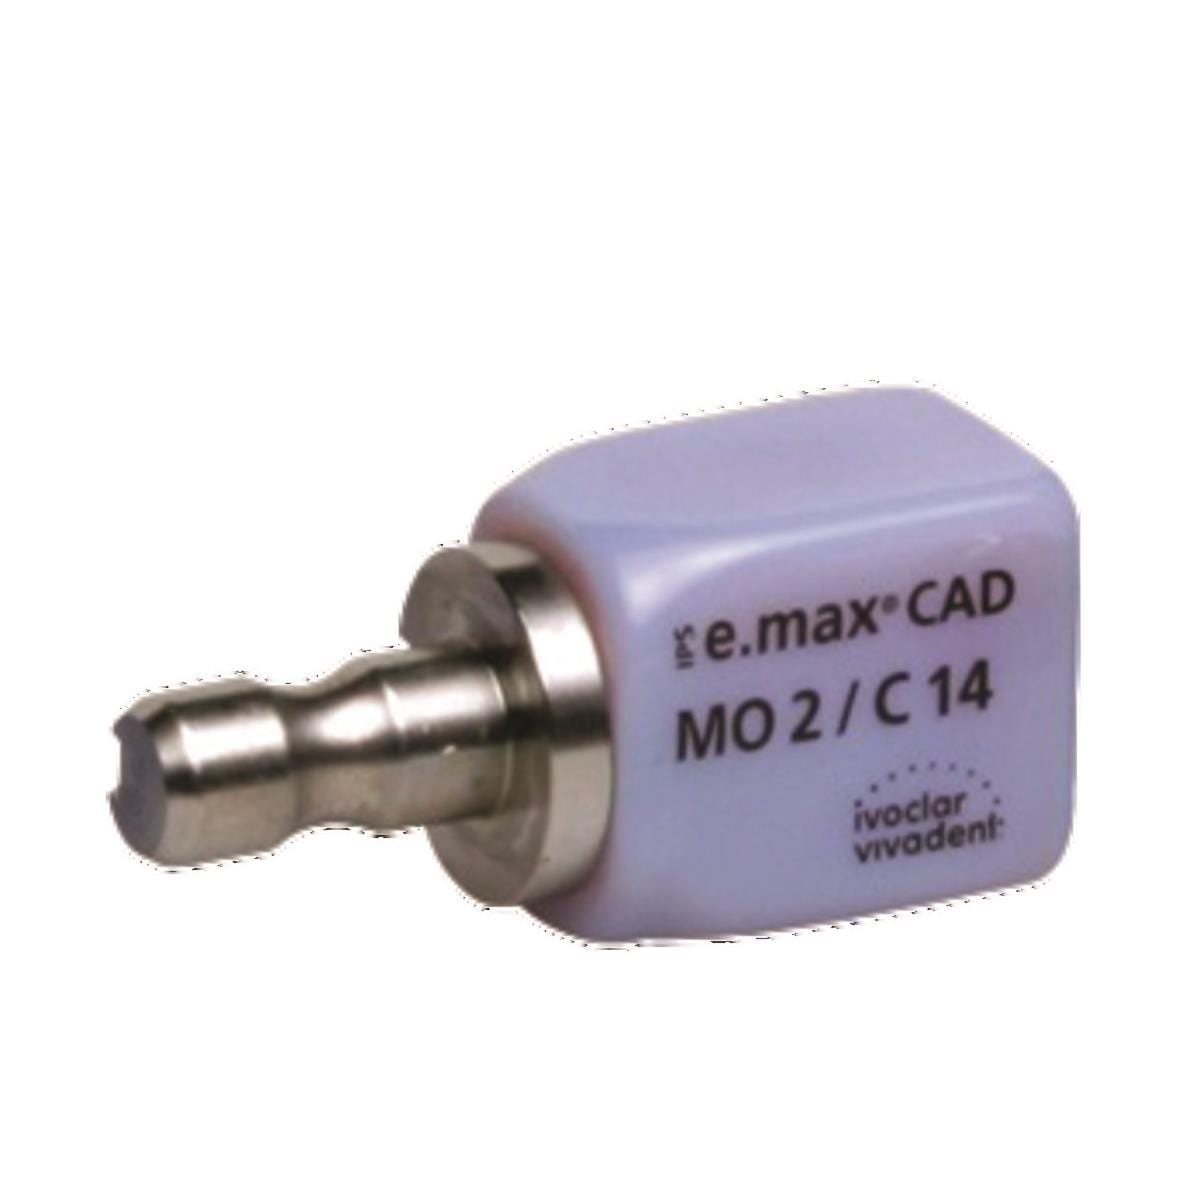 IPS e.max CAD - MO-2 - C14 - La bote de 5 blocs - IVOCLAR